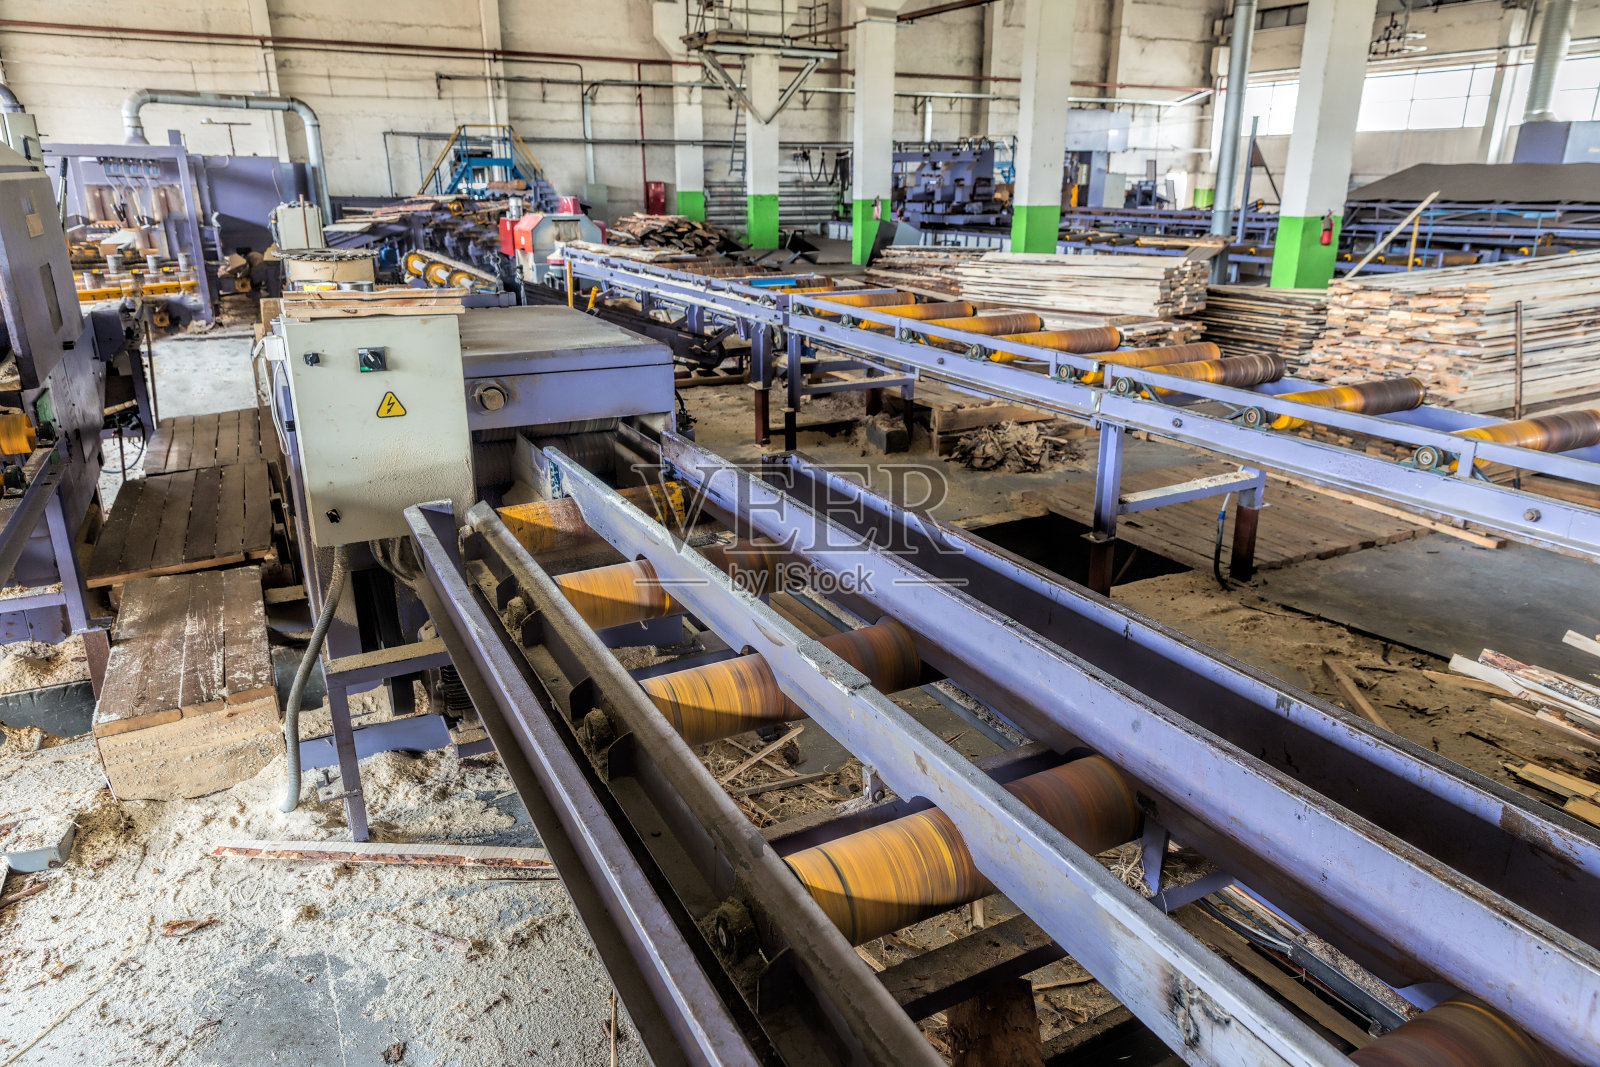 锯木厂。把原木切成木板的过程。自动线锯照片摄影图片